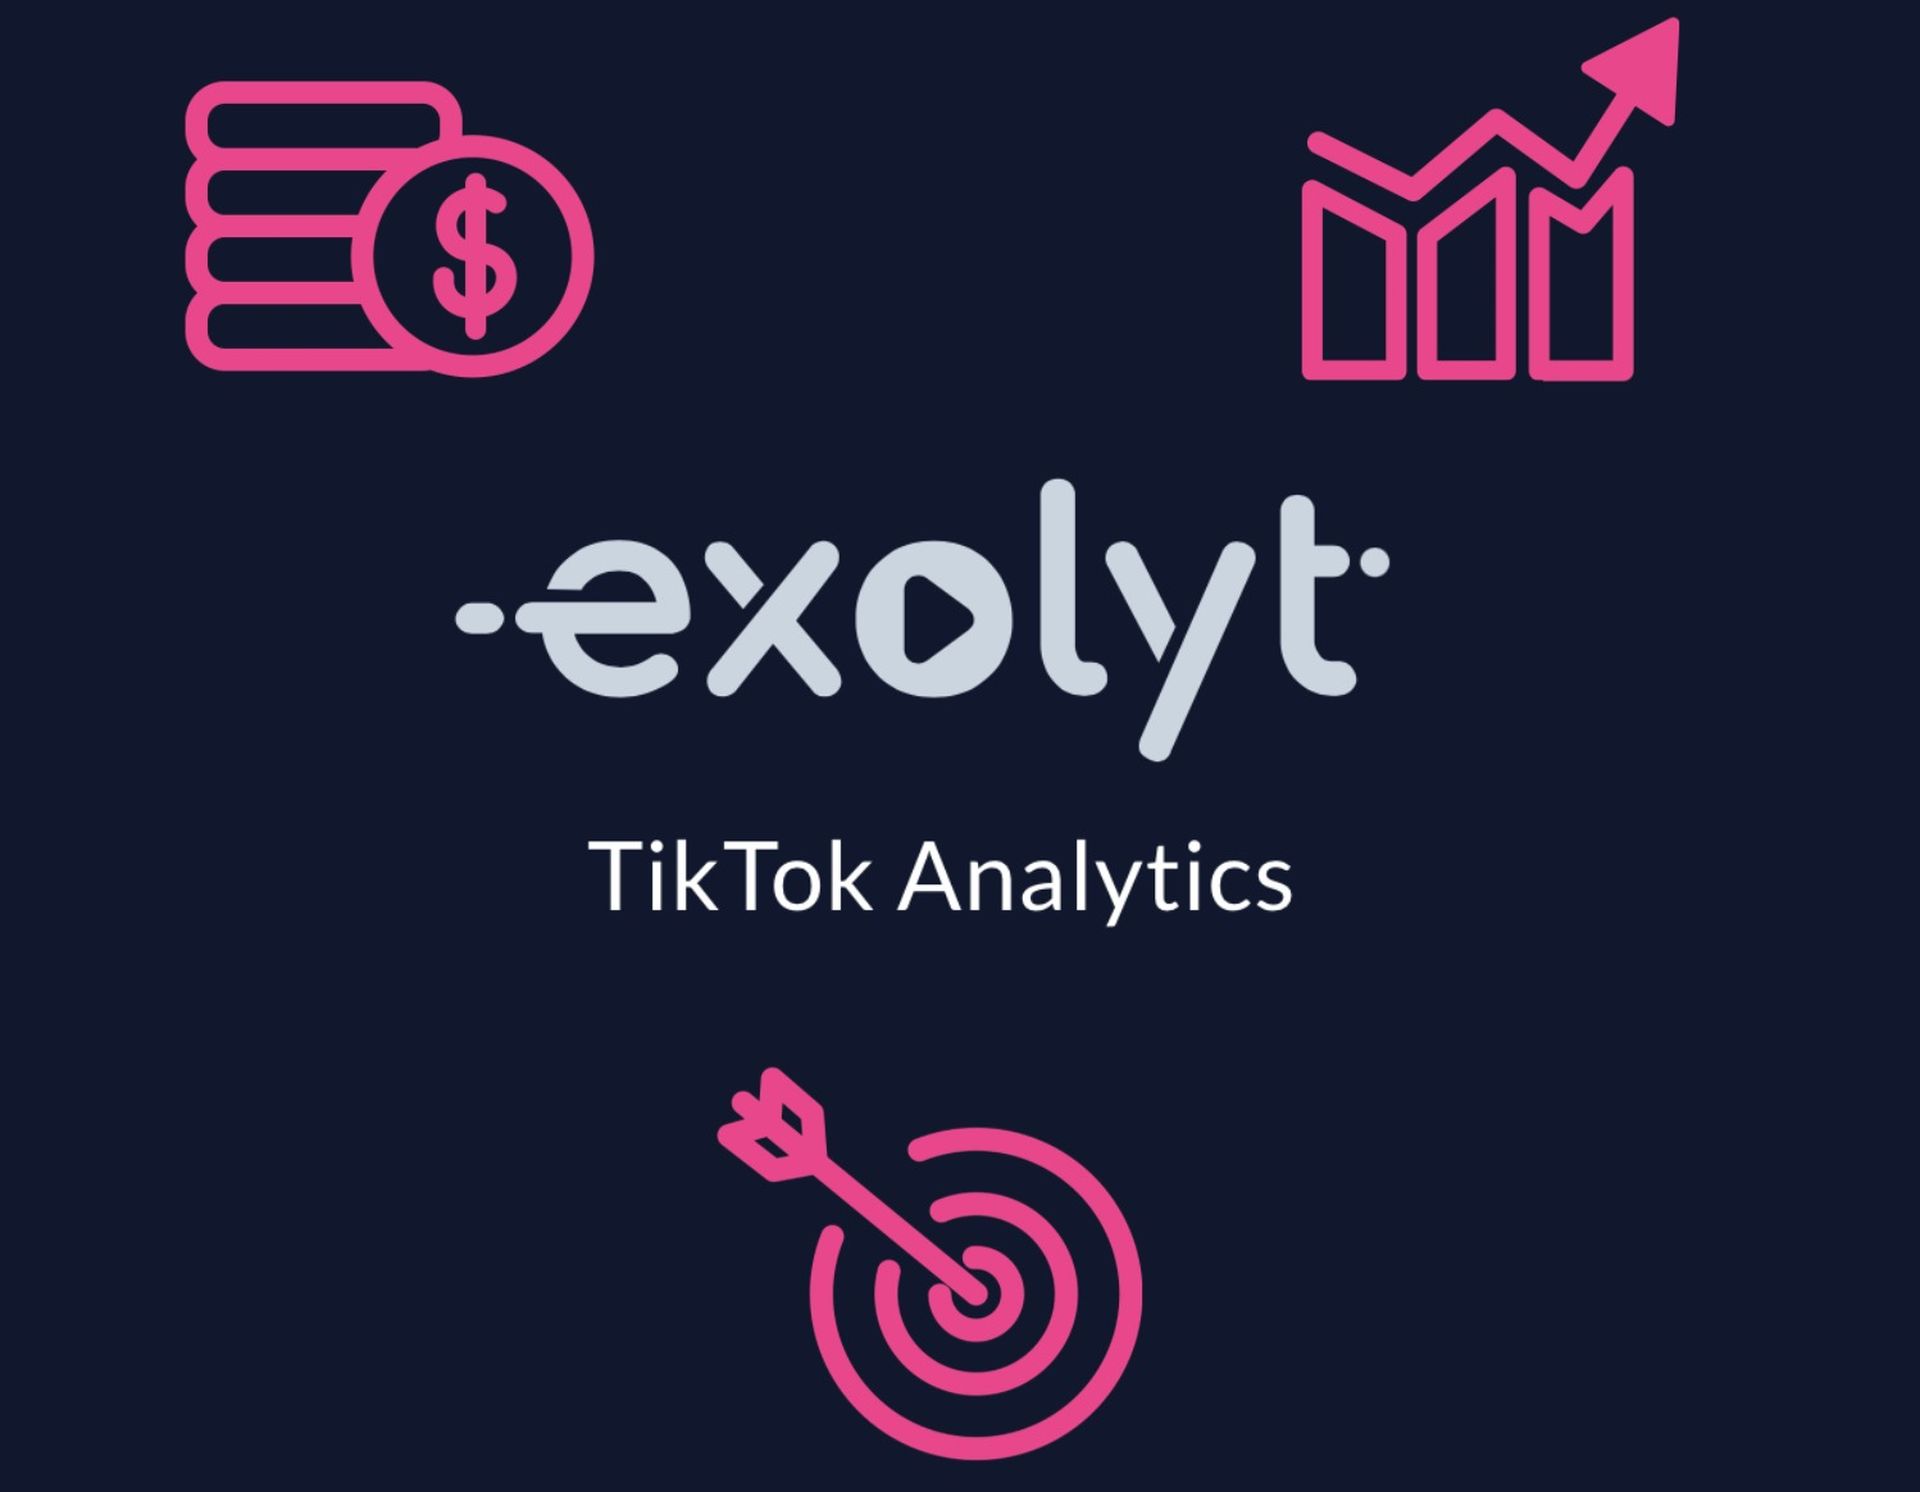 I dag skal vi fortælle dig, hvad TikTok-beregneren Exolyt er, et analyseværktøj, der kan hjælpe dig på vej til at blive en influencer og tjene penge.